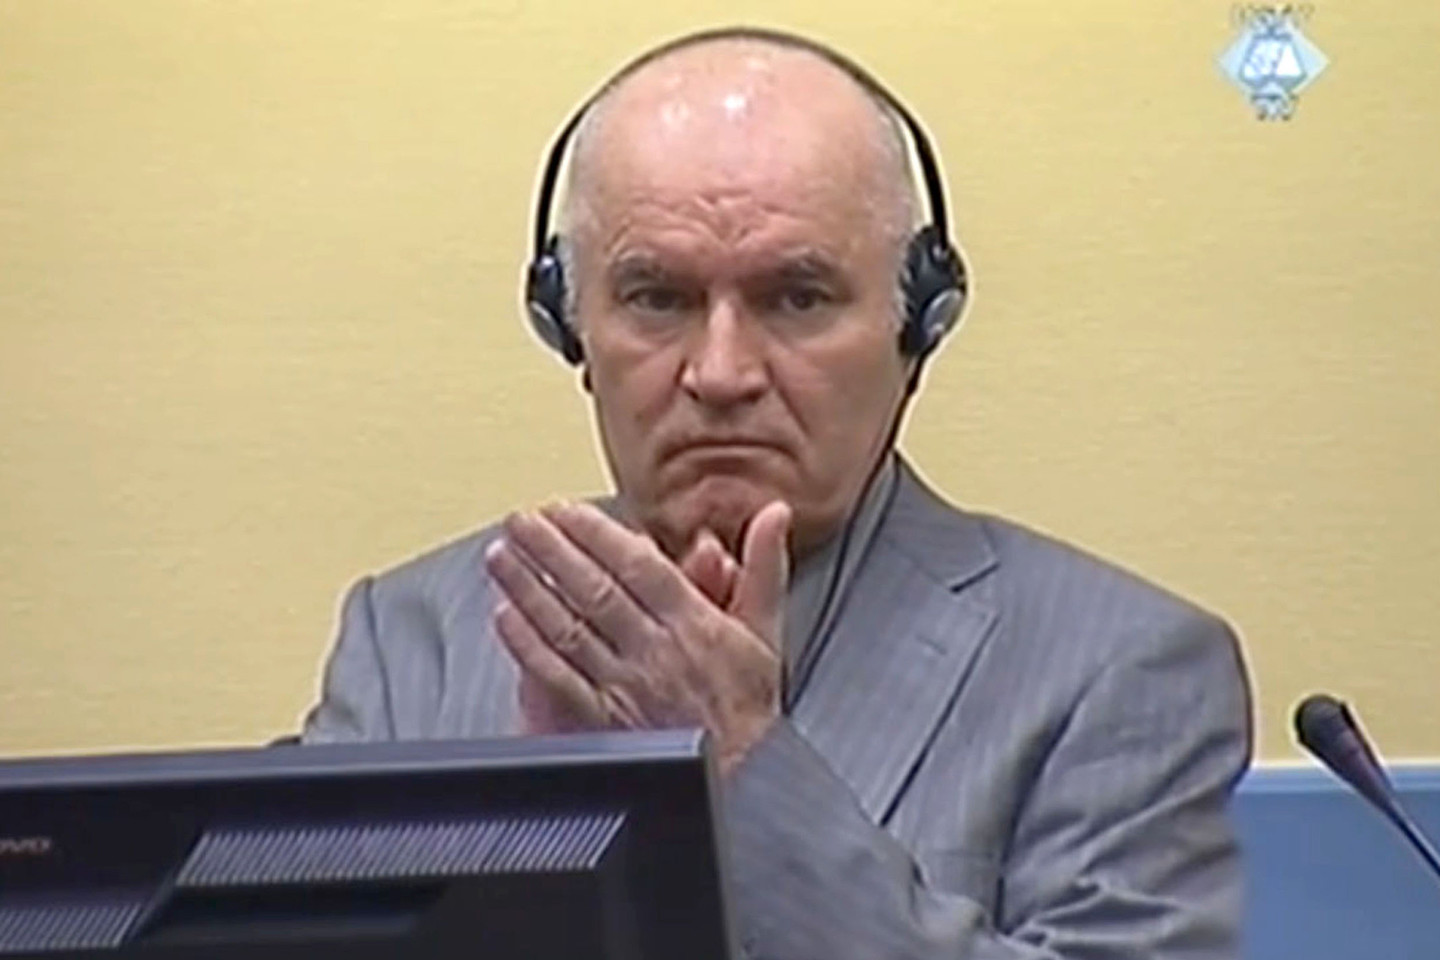  R.Mladičius nuteistas kalėti iki gyvos galvos. <br> AFP/Scanpix nuotr. 